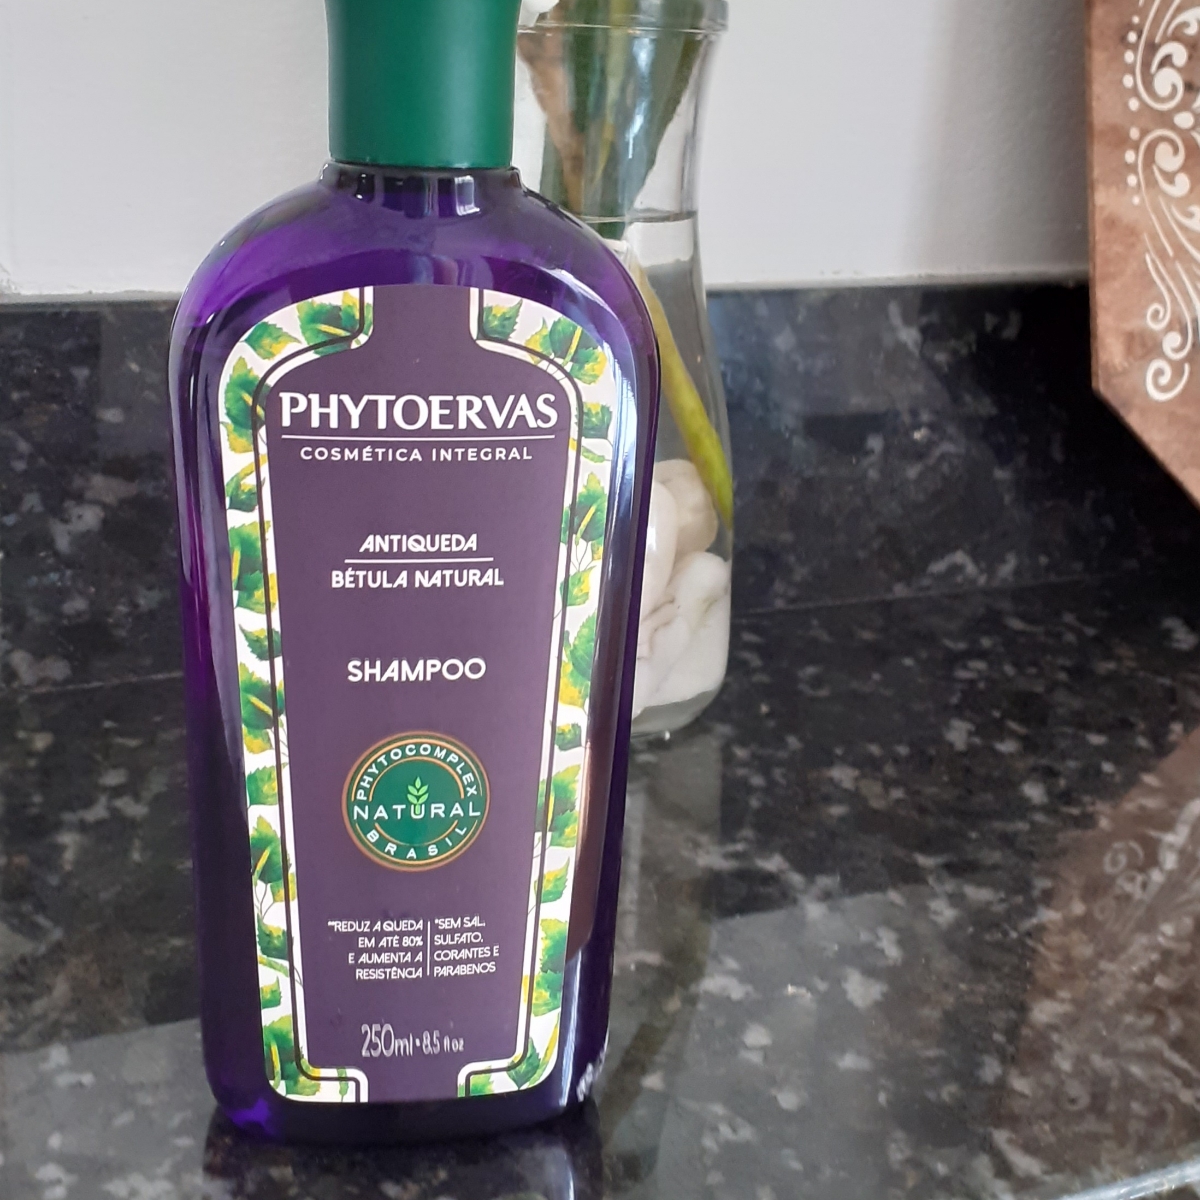 Shampoo phytoervas Antiqueda Review